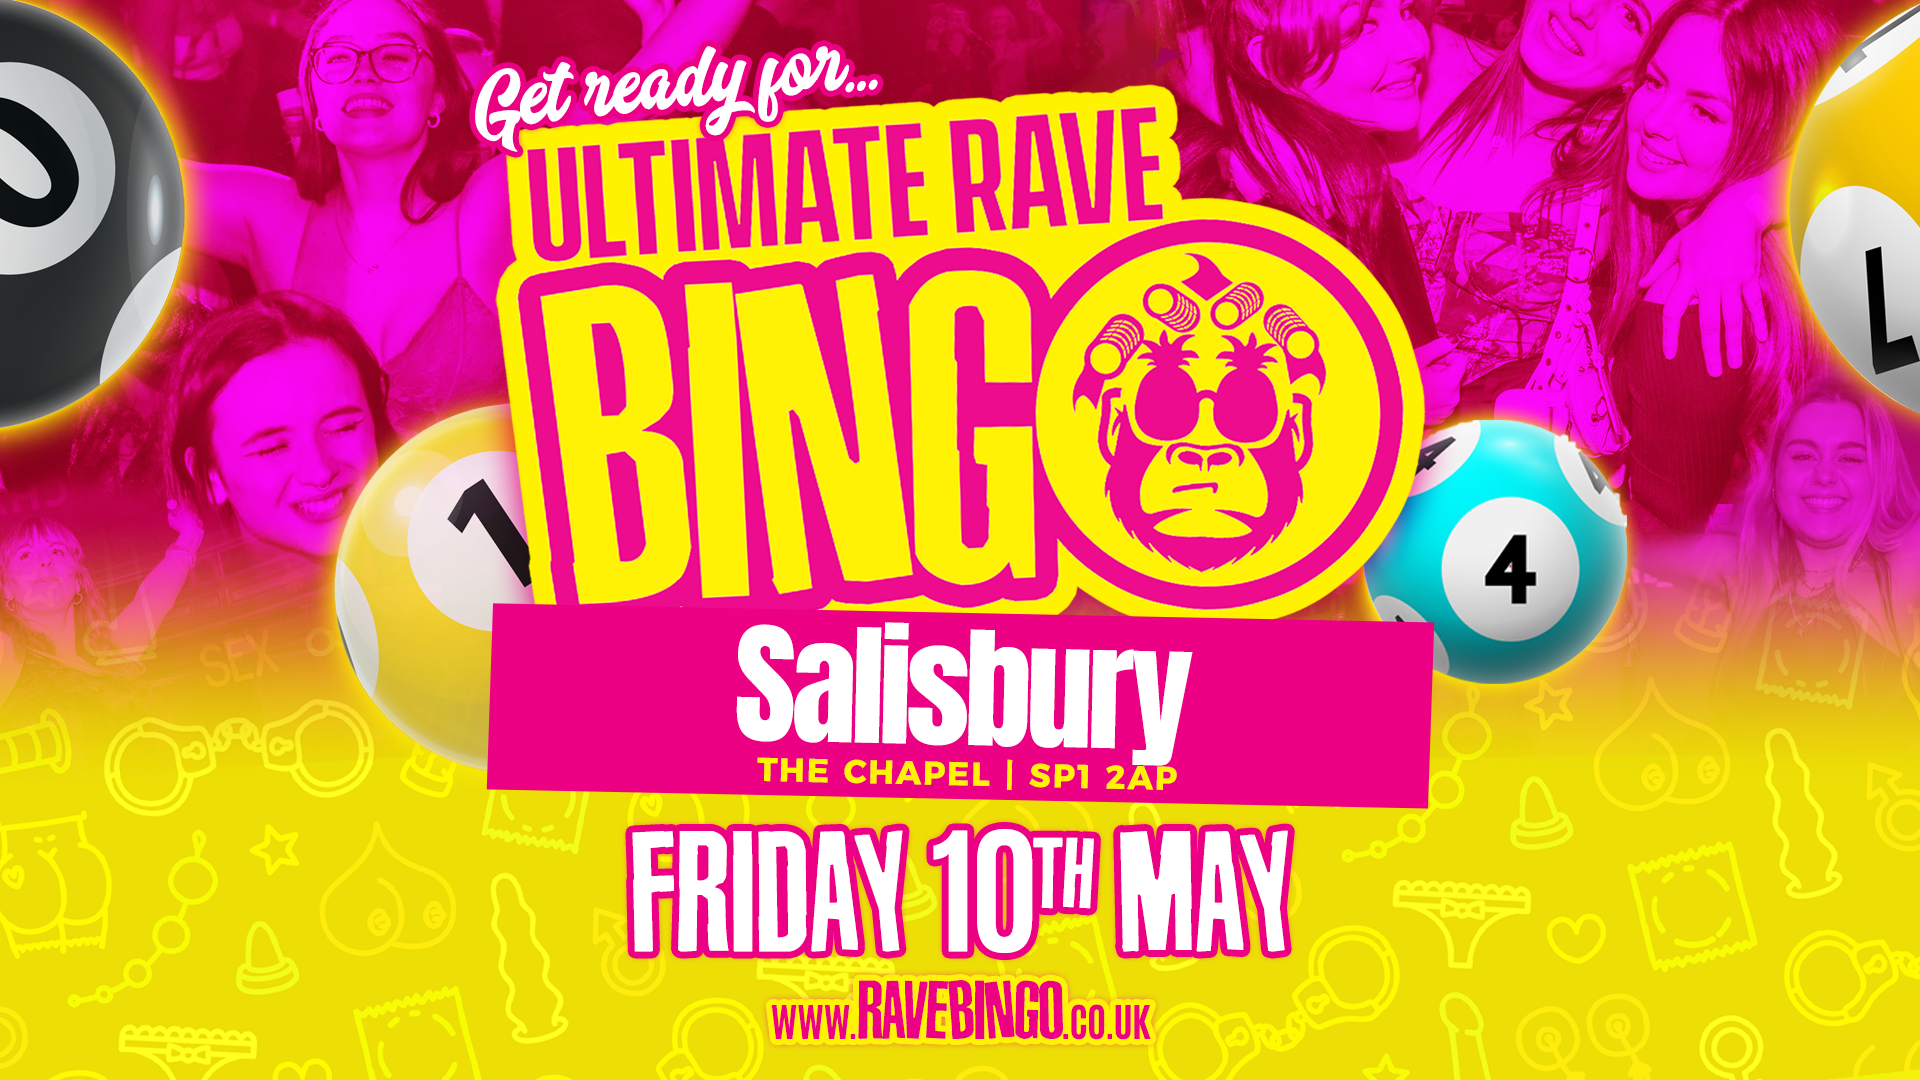 Ultimate Rave Bingo // Salisbury // Friday 10th May